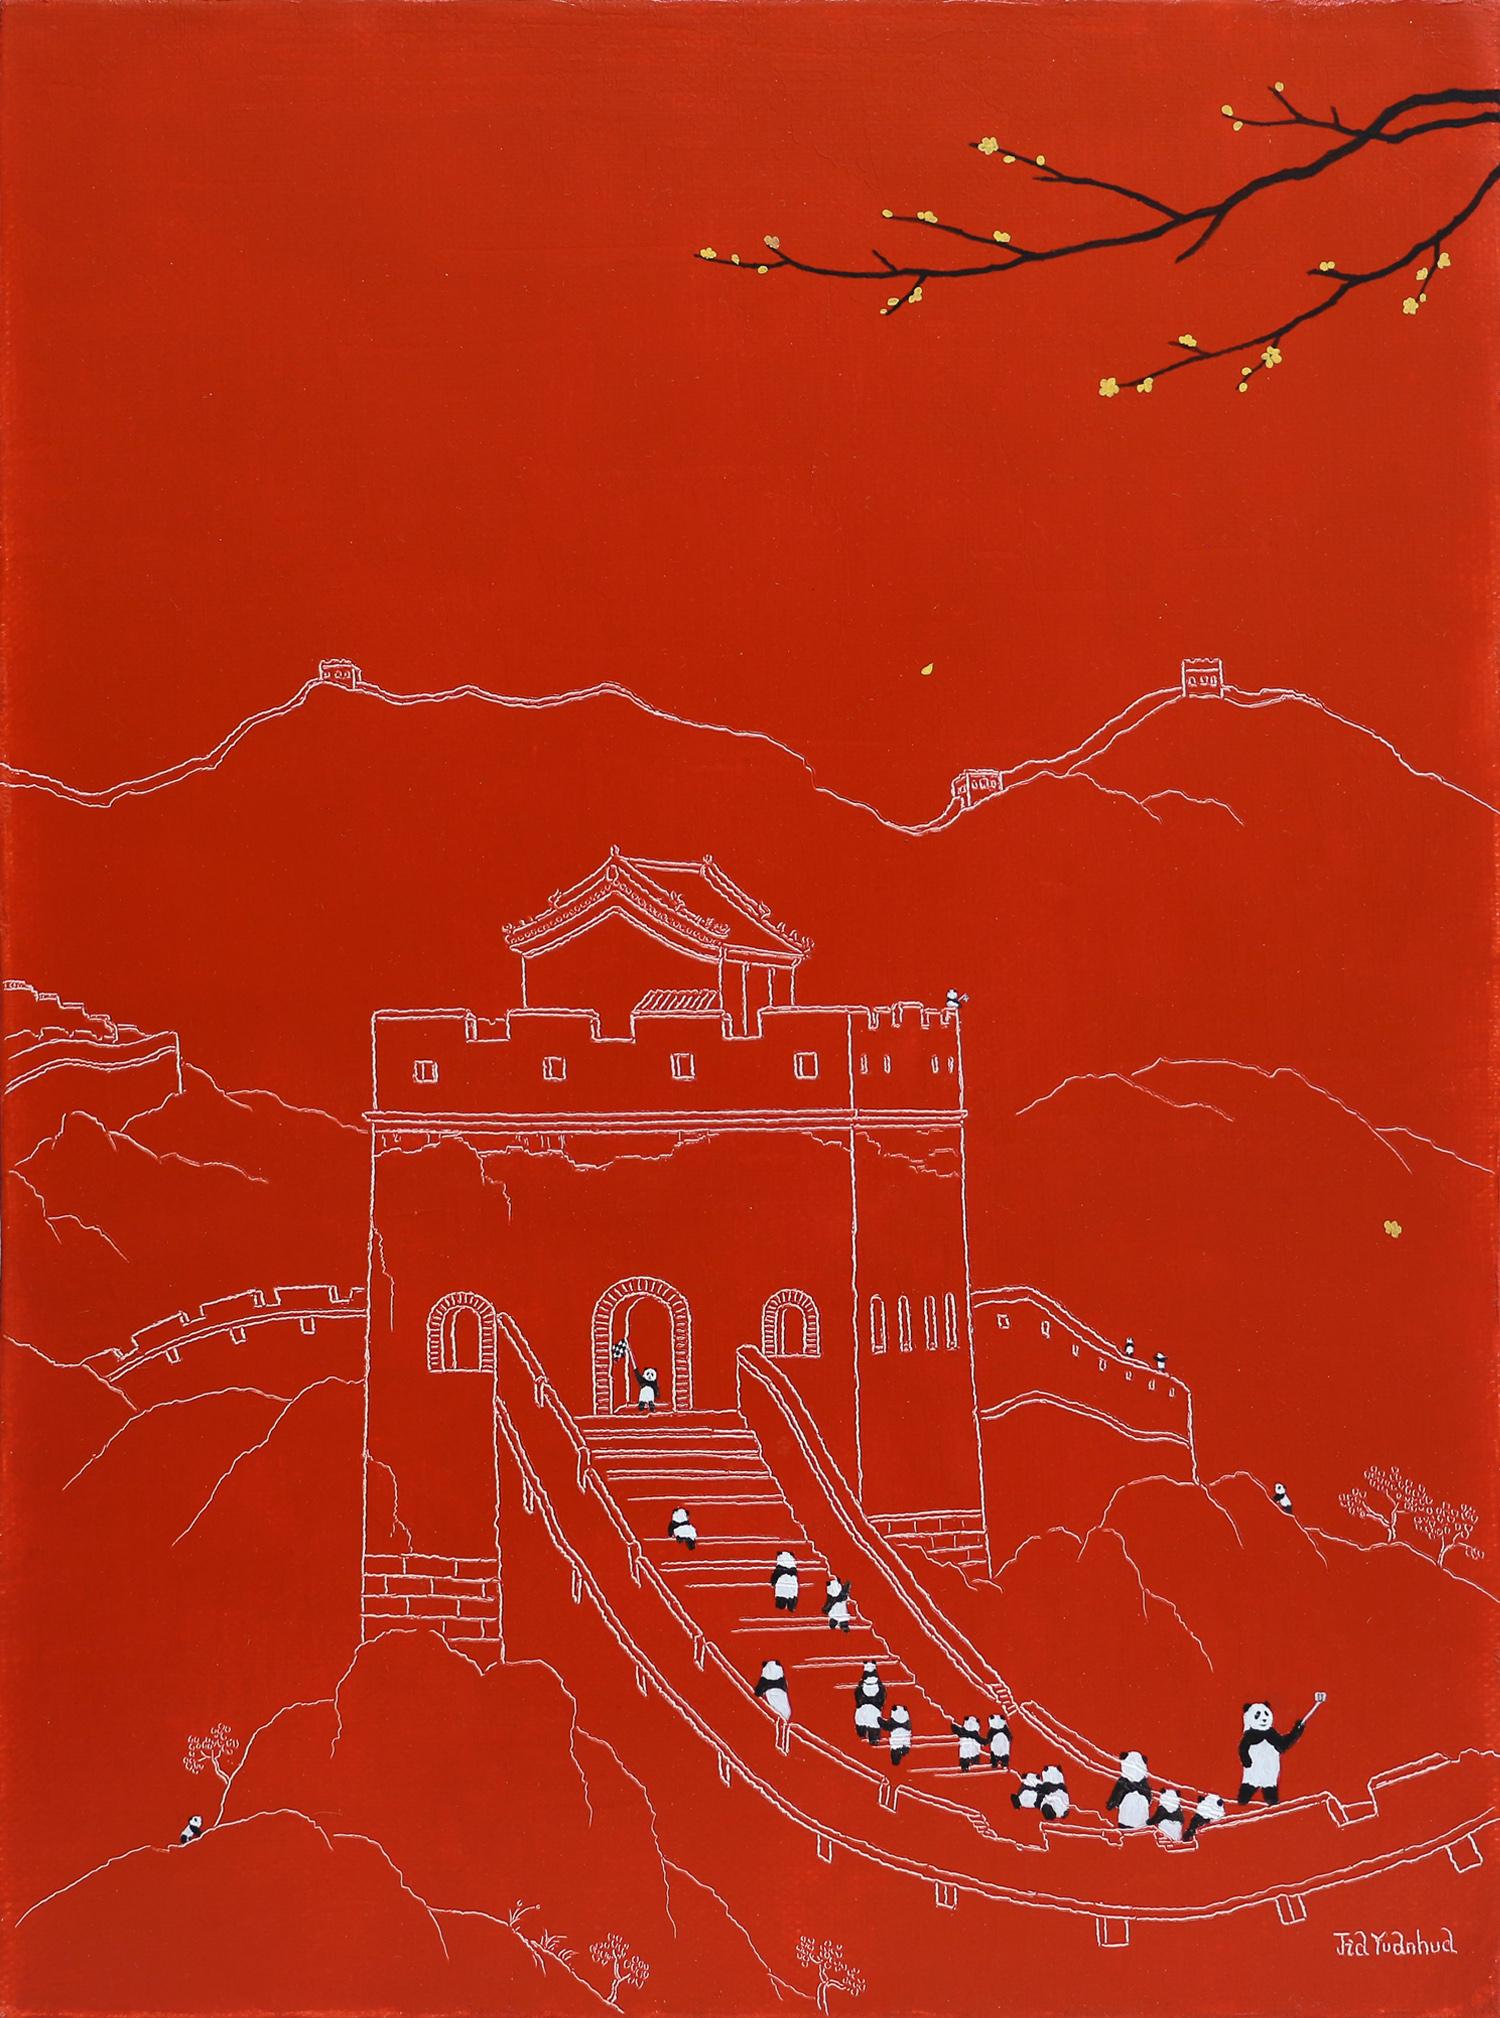 Art contemporain chinois par Jia Yuan-Hua - Sightseeing n° 9